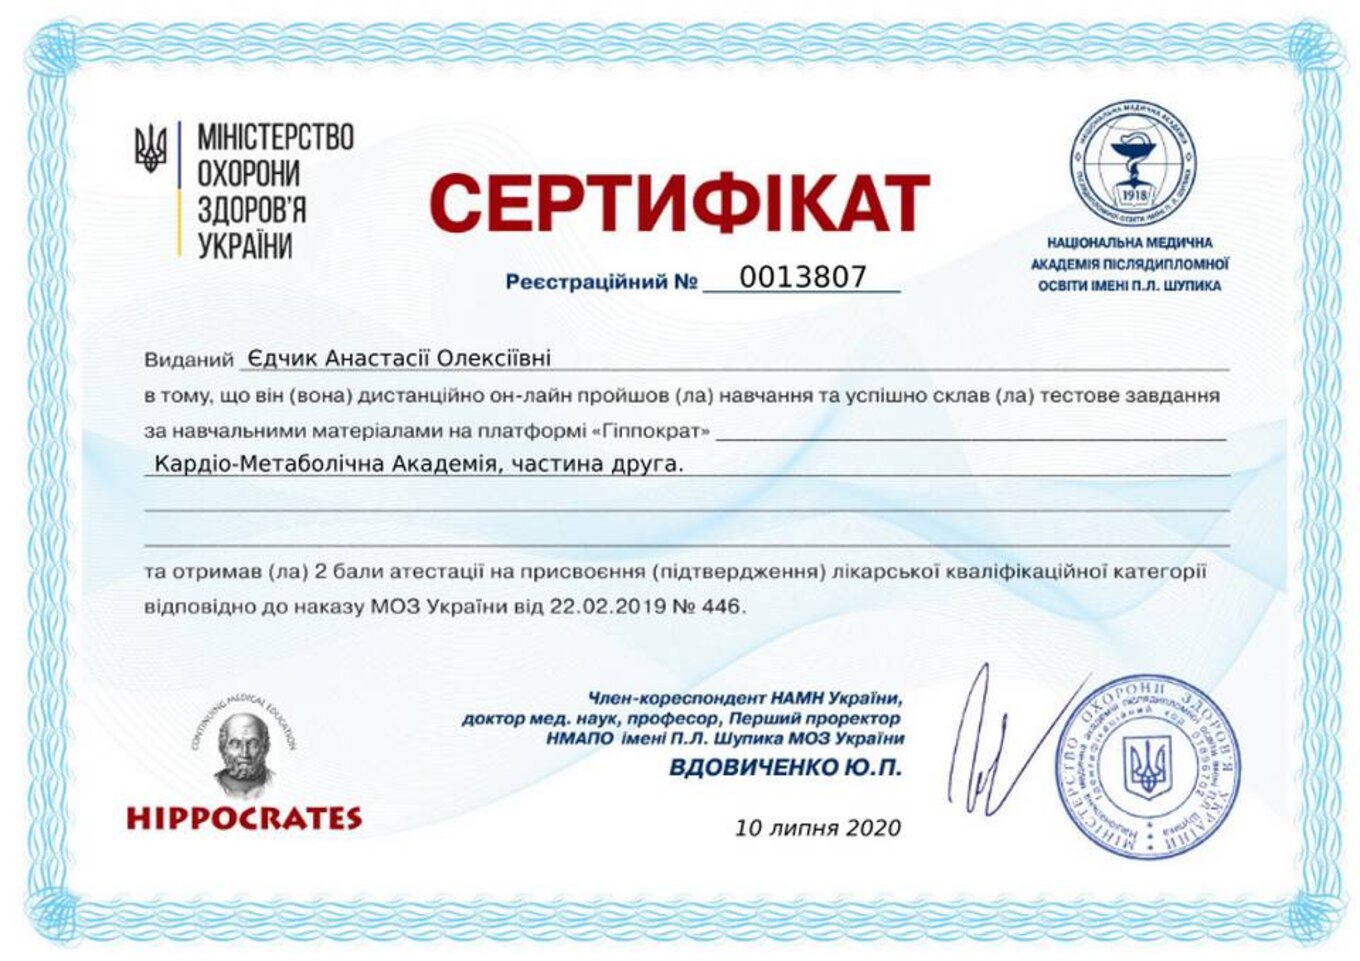 certificates/yedchik-anastasiya-oleksiyivna/erc-edchik-cert-60.jpg